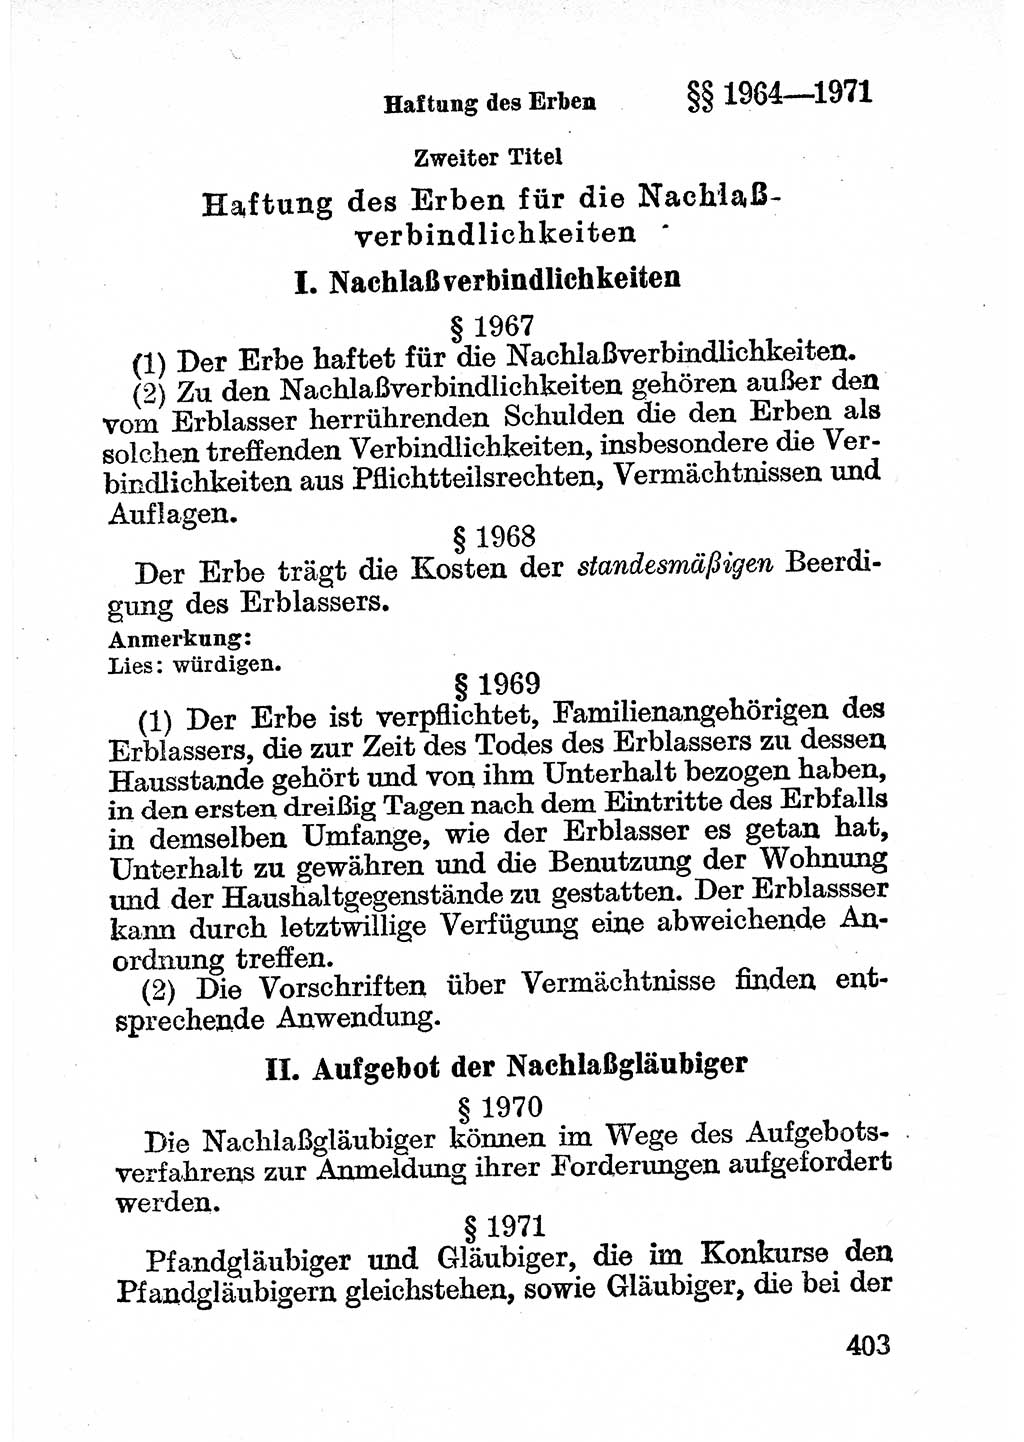 Bürgerliches Gesetzbuch (BGB) nebst wichtigen Nebengesetzen [Deutsche Demokratische Republik (DDR)] 1956, Seite 403 (BGB Nebenges. DDR 1956, S. 403)